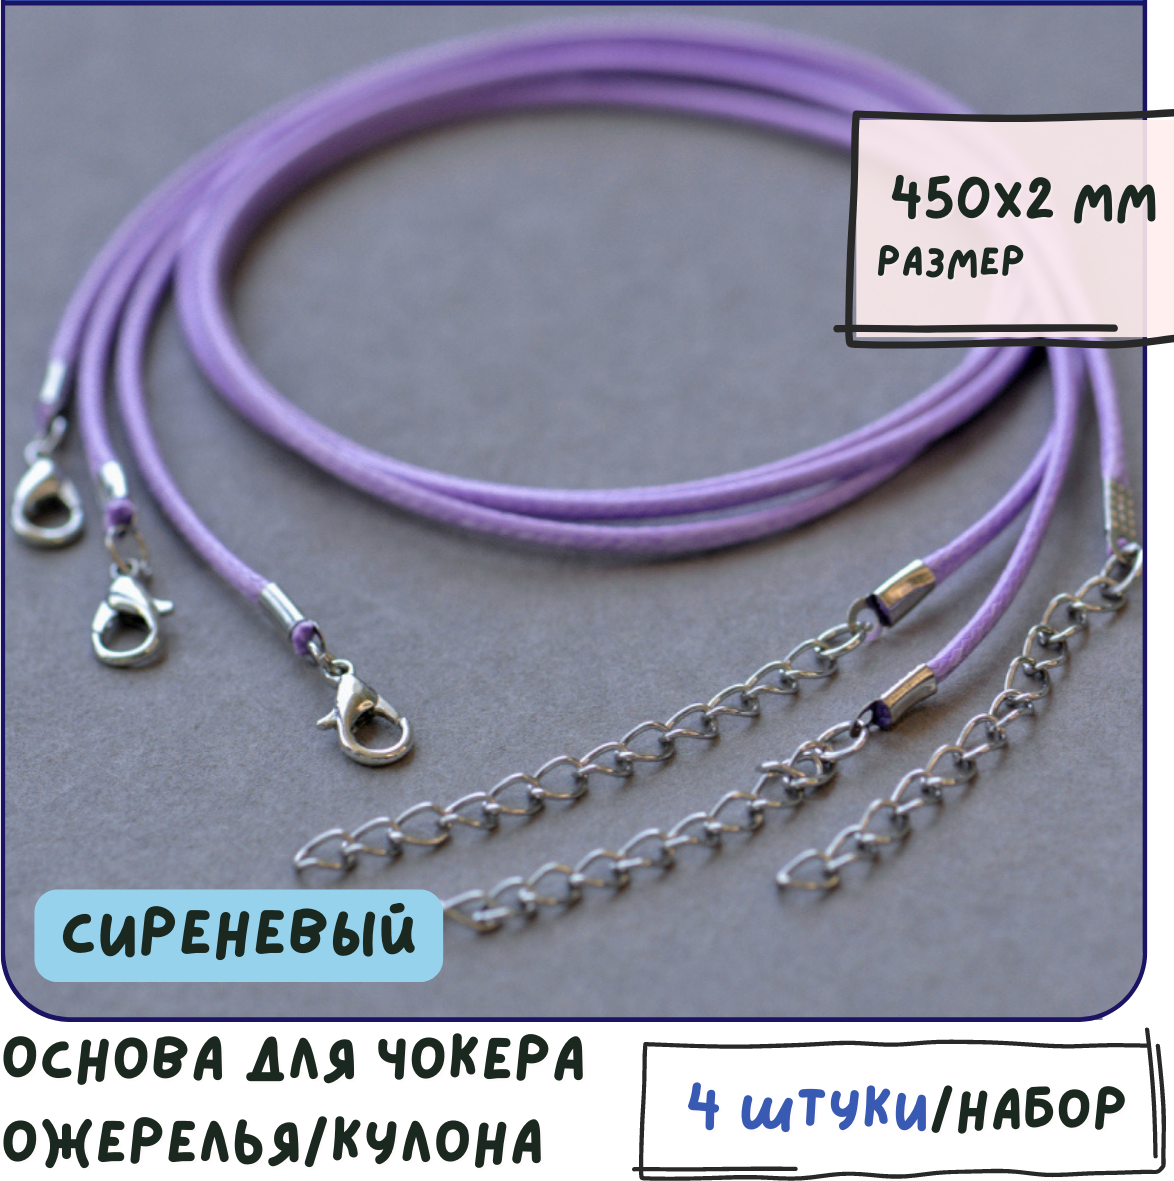 Основа для ожерелья/кулона/чокера с замочком (4 шт.), вощеный шнур, размер 450х2 мм, цвет сиреневый